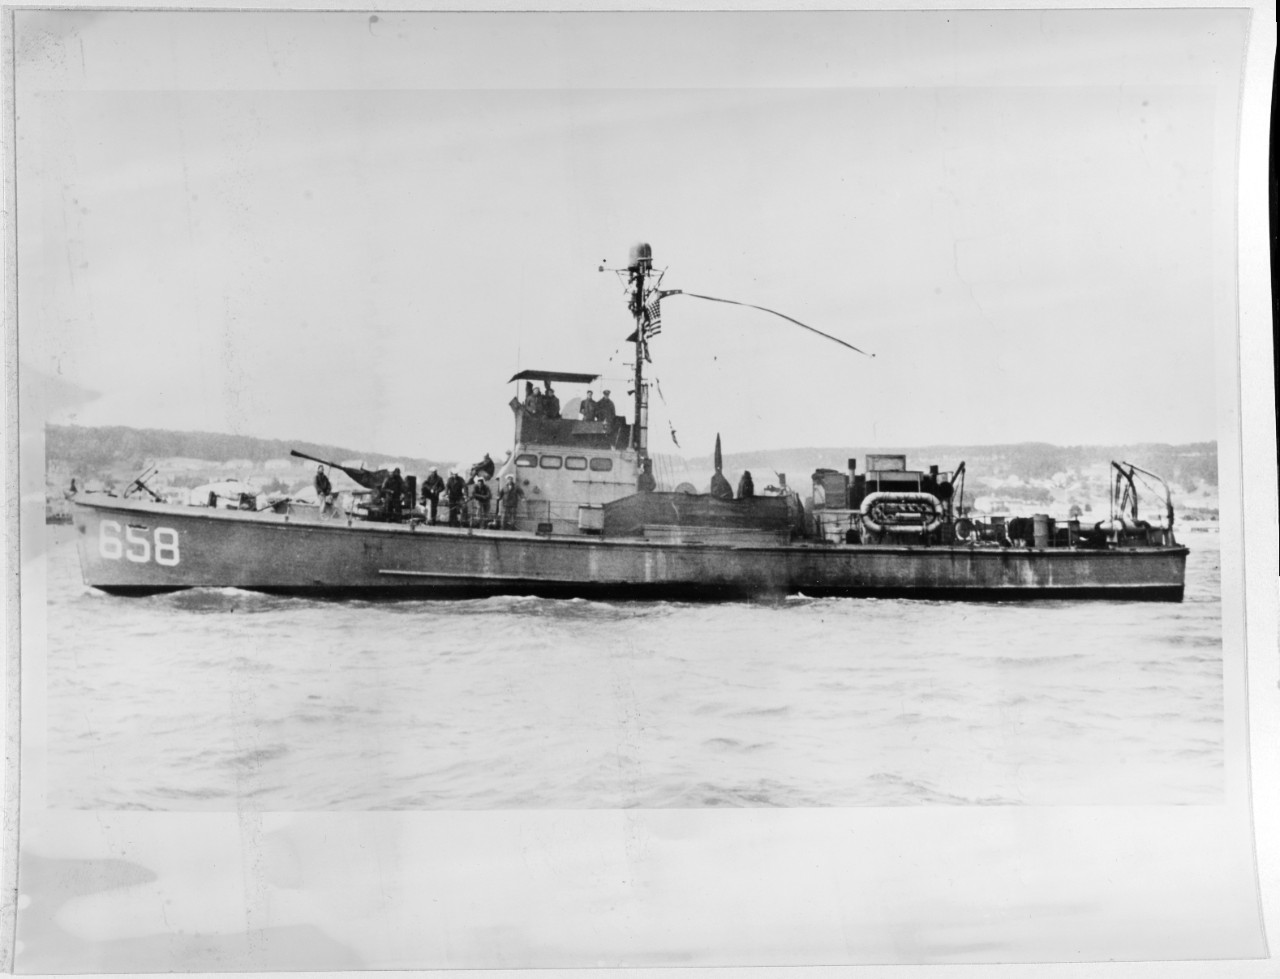 USS SC-658